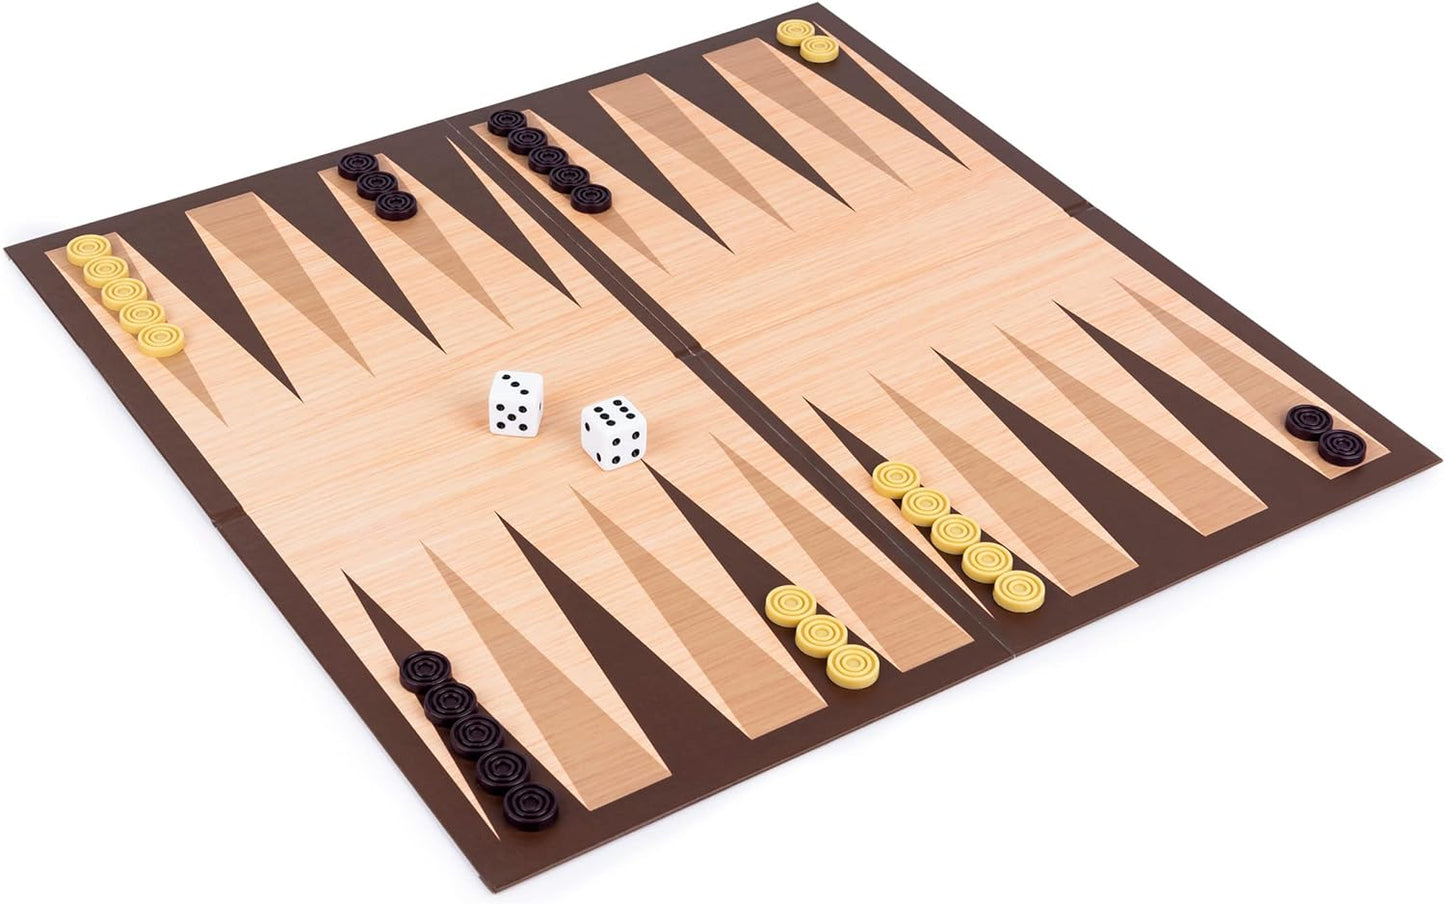 Spin Master - Cardinal, Backgammon Board Game